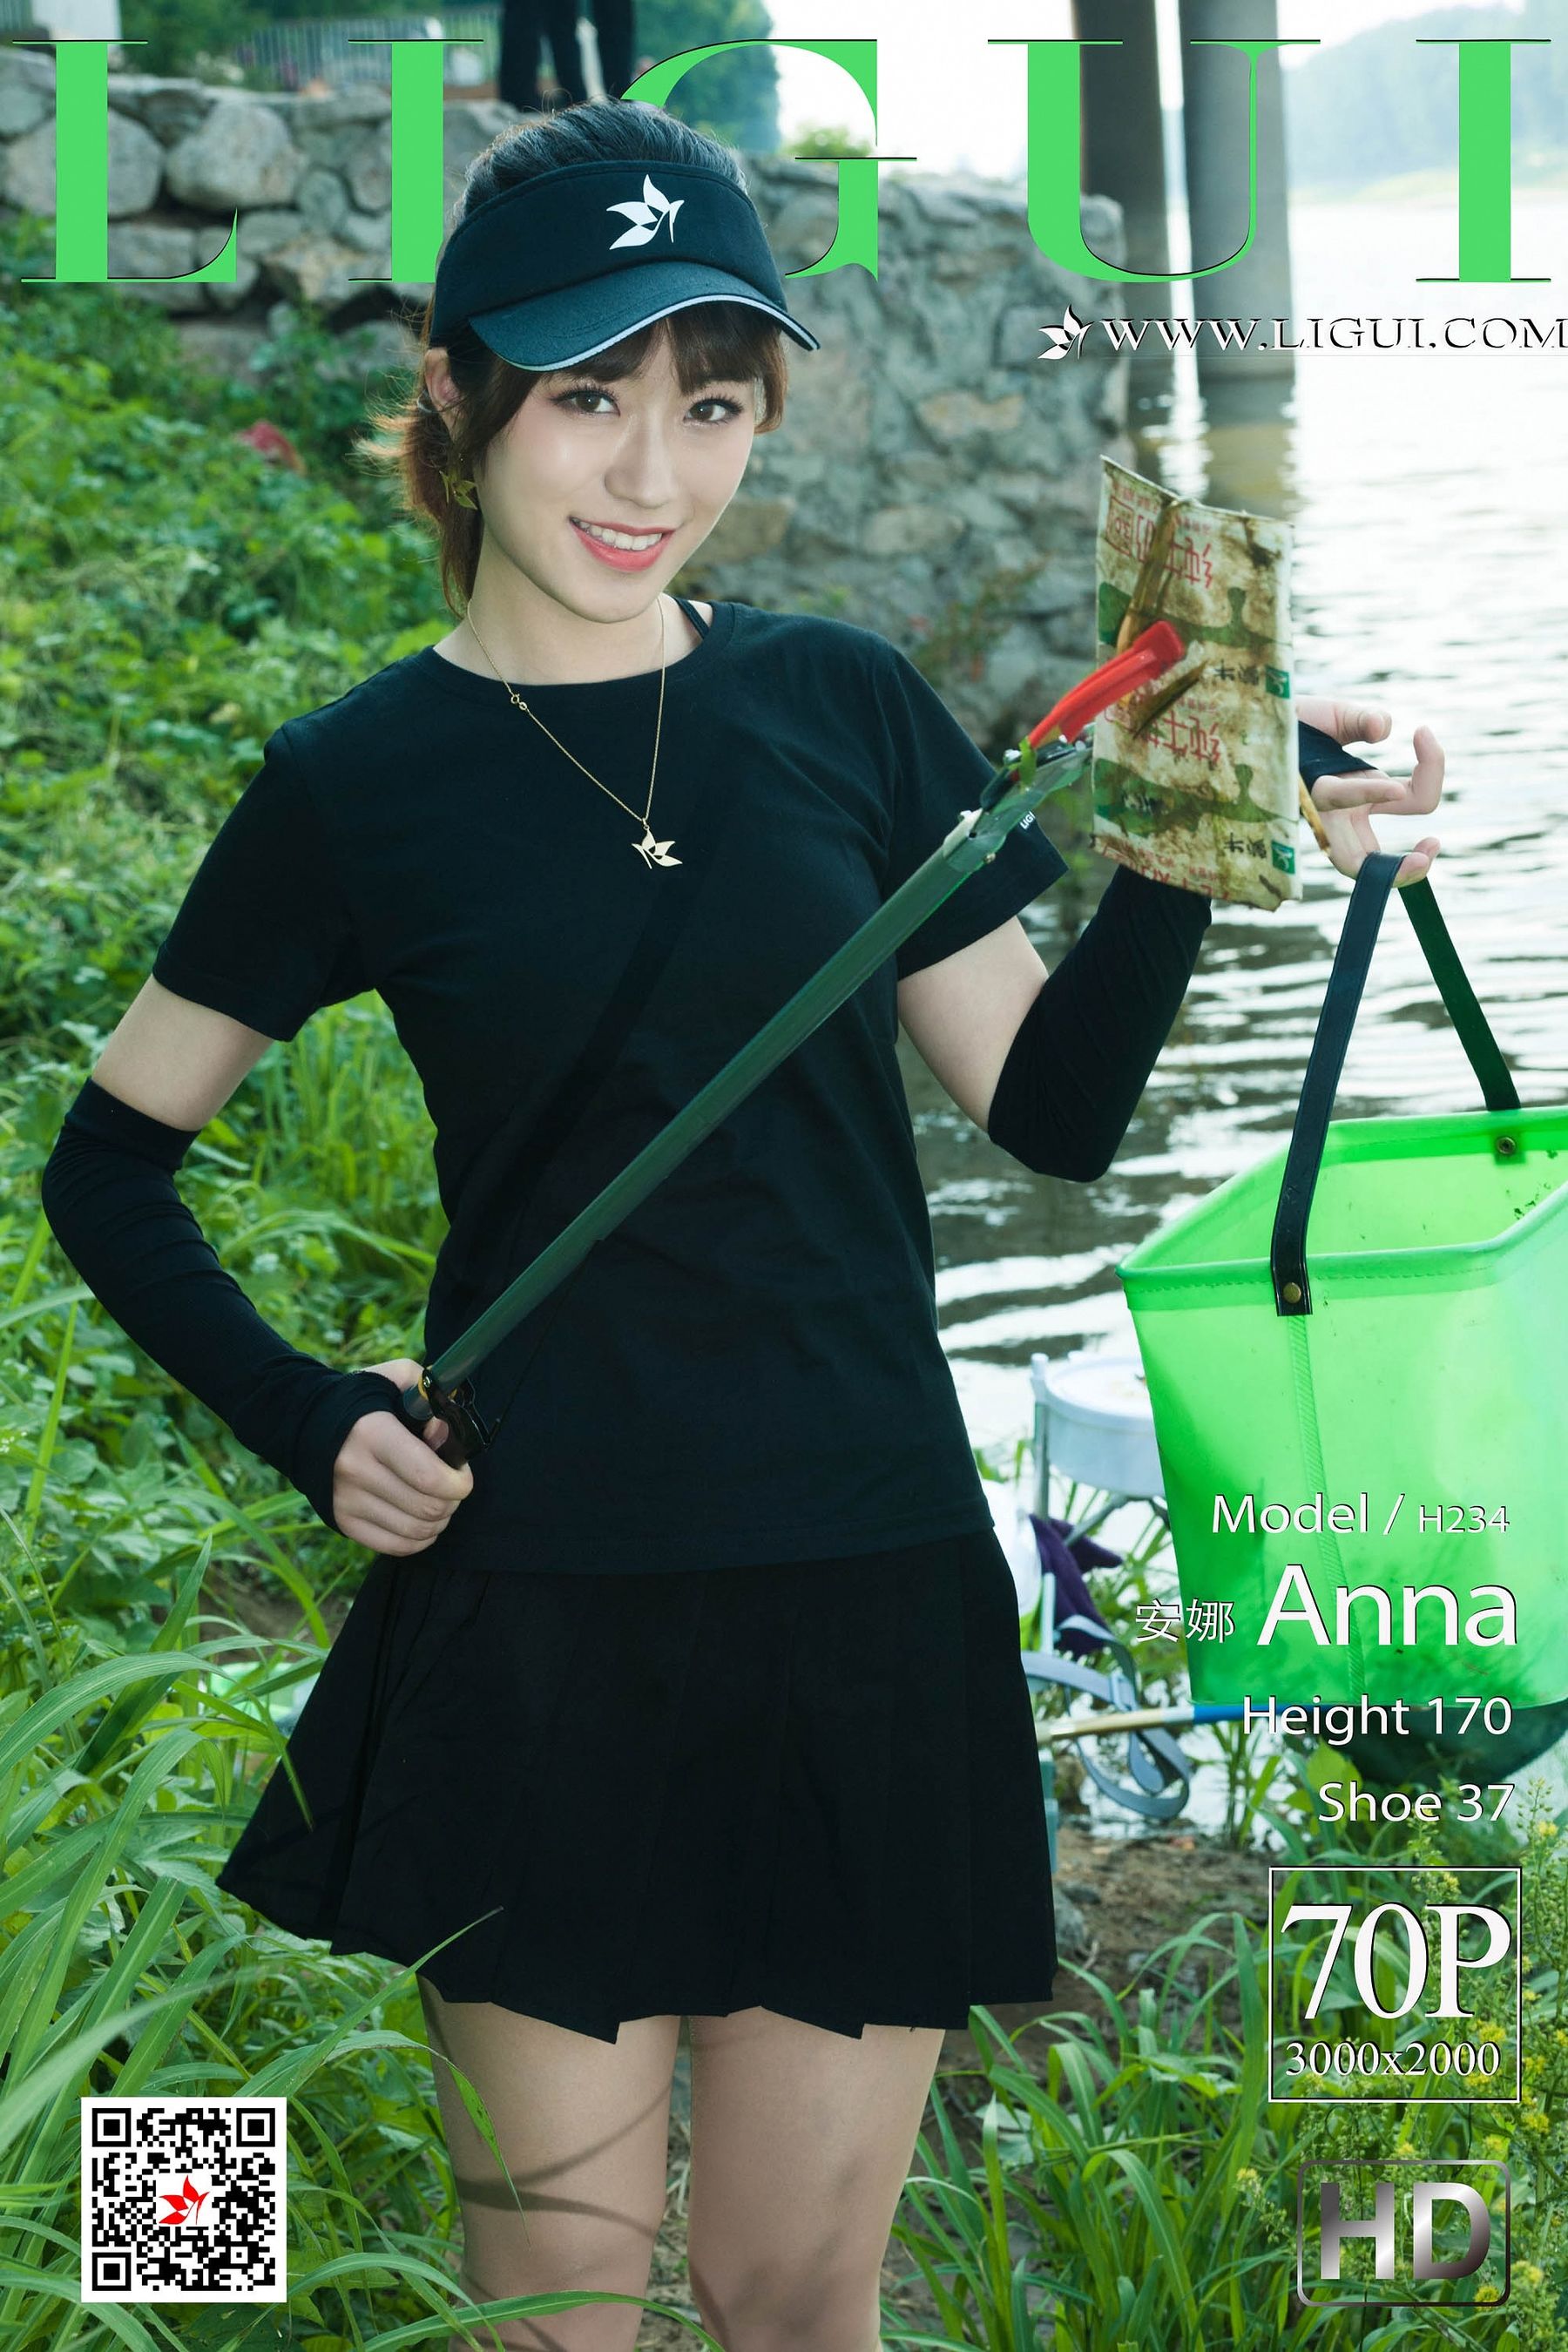 [丽柜Ligui] 2019.06.26 网络丽人 Model 安娜Anna/(71P)